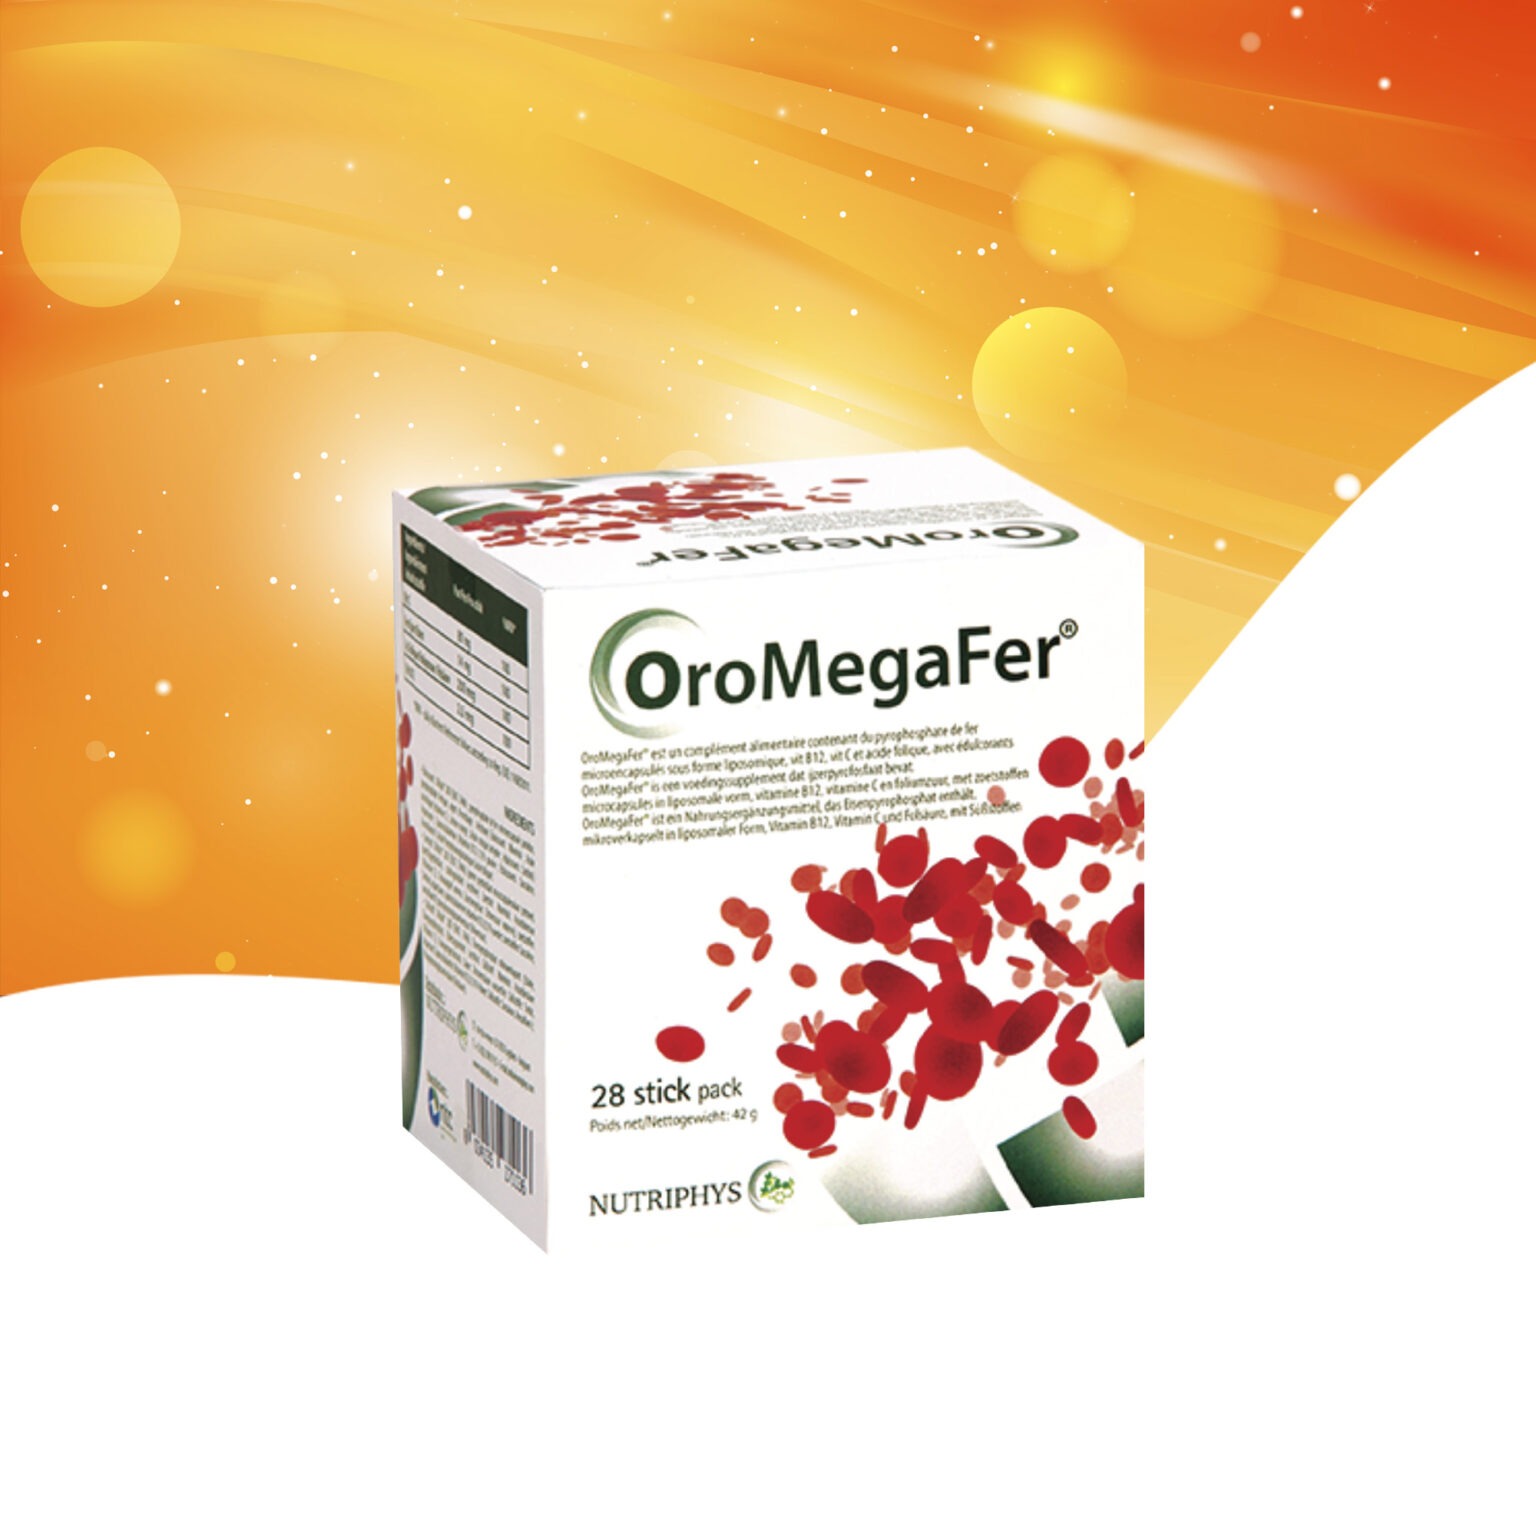 Bouteille d'OroMegaFer®, complément alimentaire fer sans effets secondaires, sur fond blanc avec feuilles vertes.